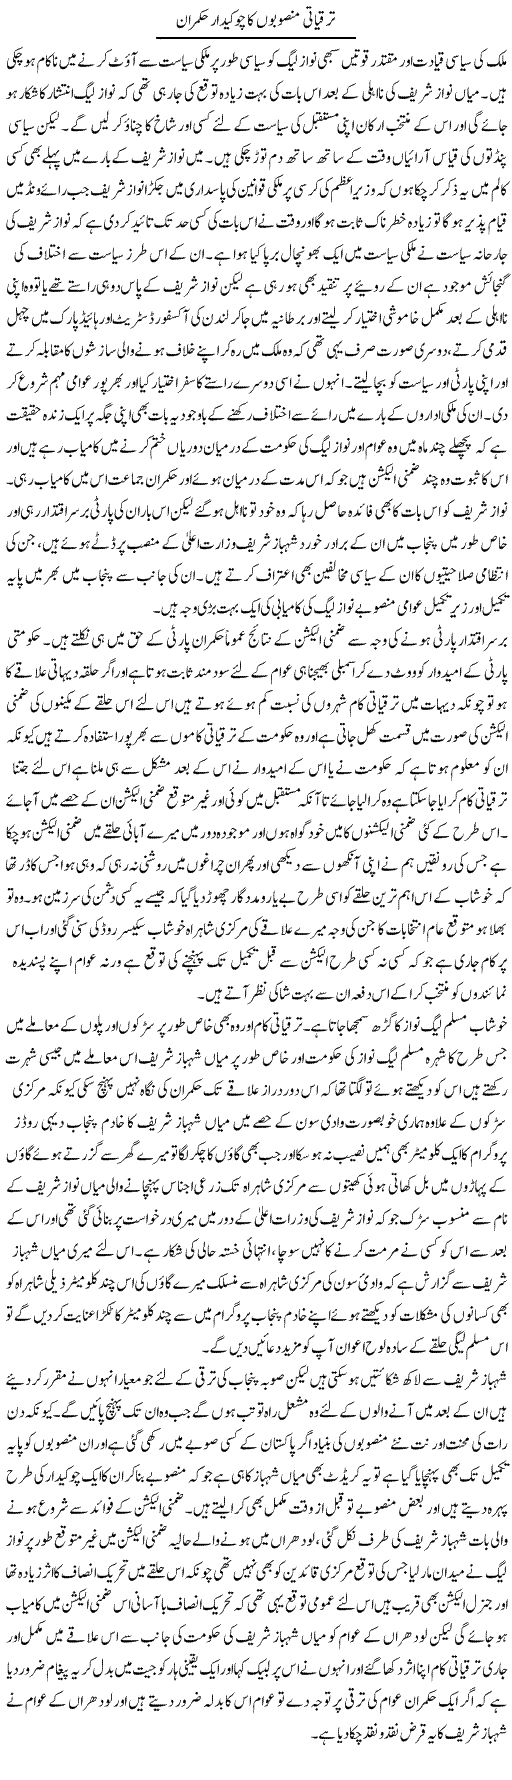 Taraqiati Mansoobon Ka Chowkidar Hukmaran | Abdul Qadir Hassan | Daily Urdu Columns